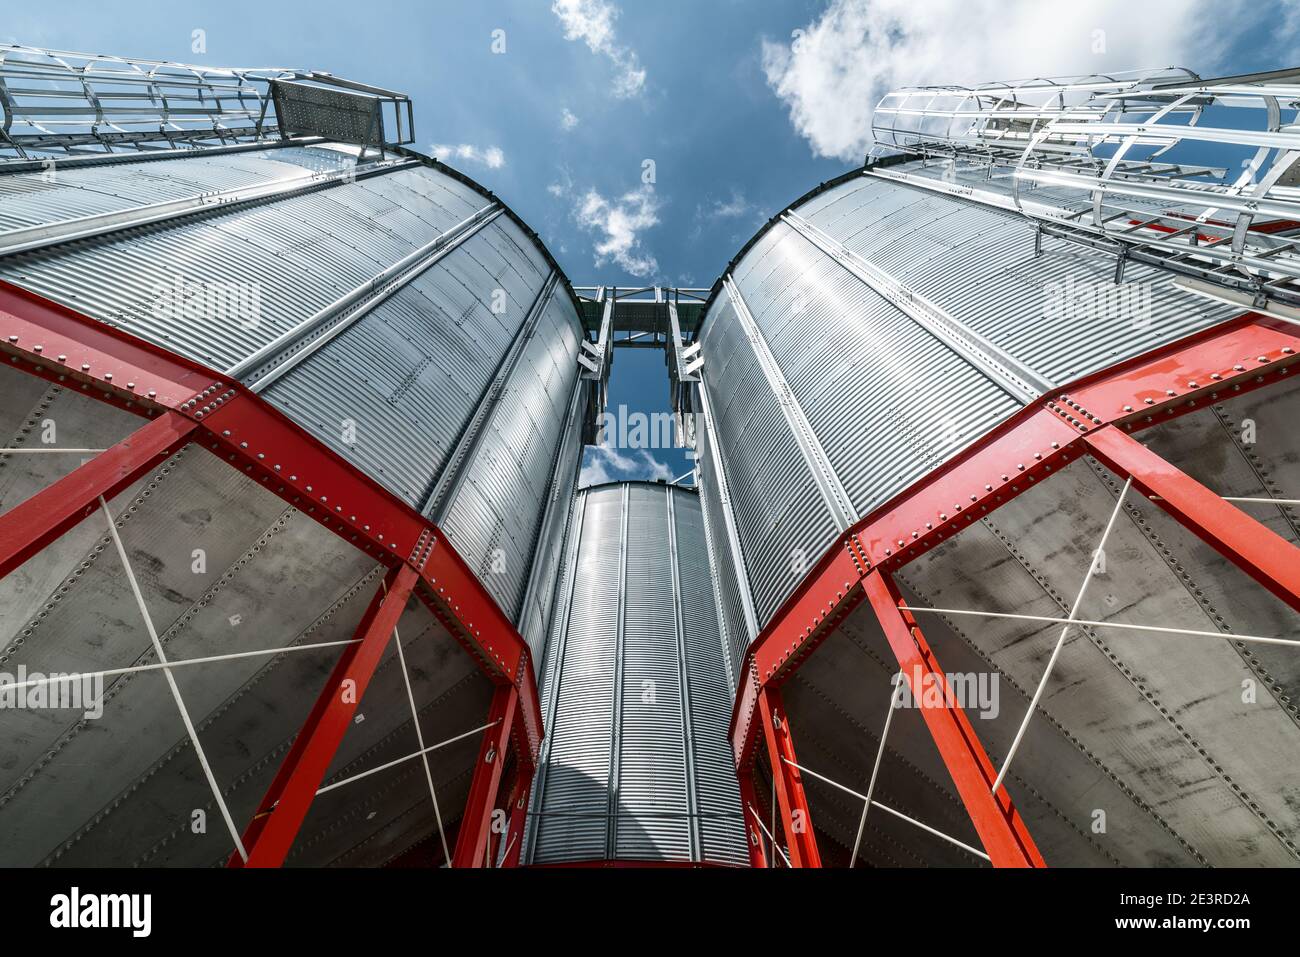 Métamatériel de la base du silo pour le stockage des cultures céréalières. Puissantes poutres en acier de couleur rouge. Banque D'Images